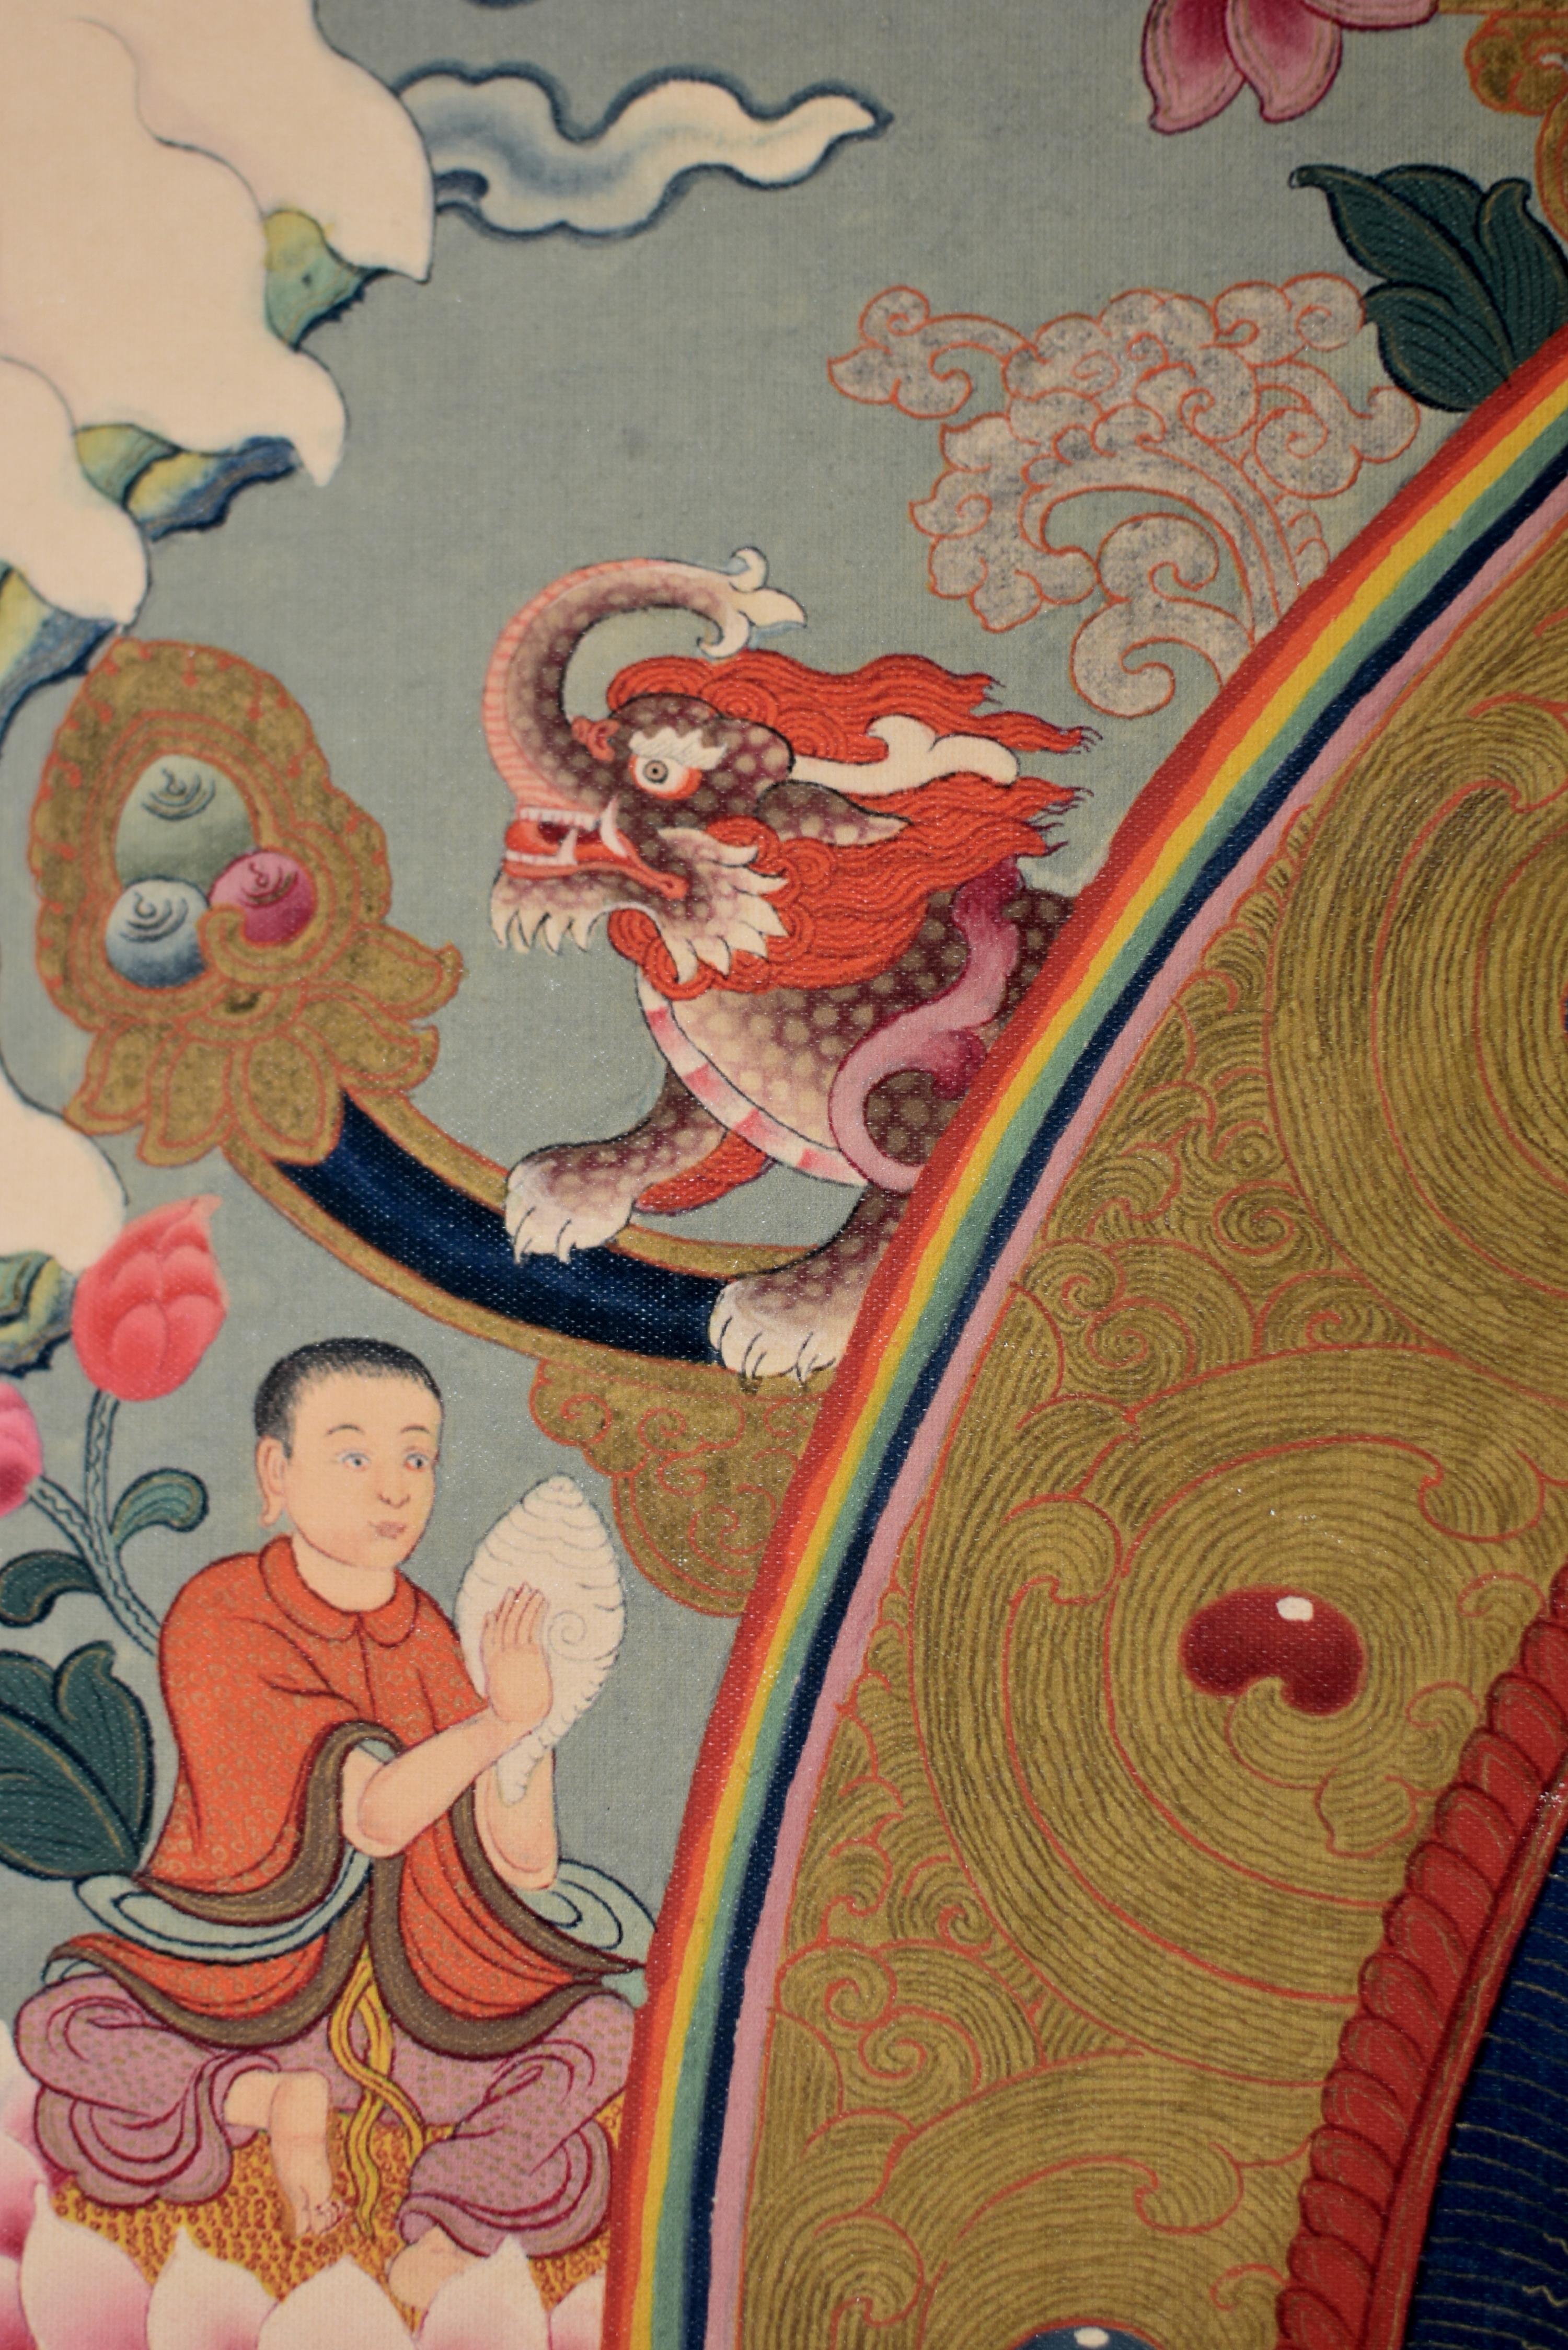 20th Century Tibetan Thangka White Tara on Linen Canvas